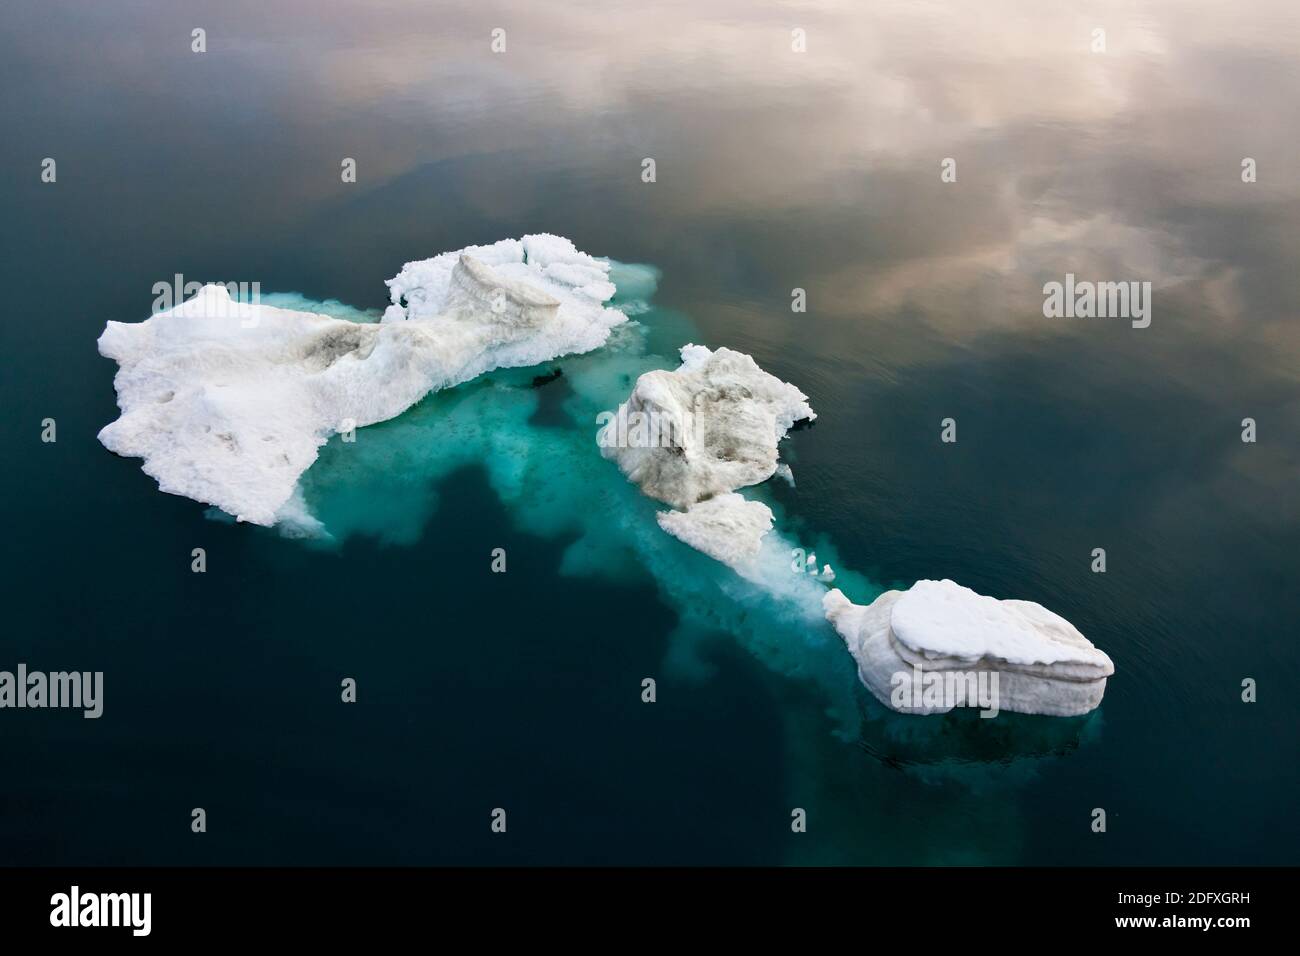 La glace flottante en mer de Tchoukotka, en Russie extrême-orient Banque D'Images